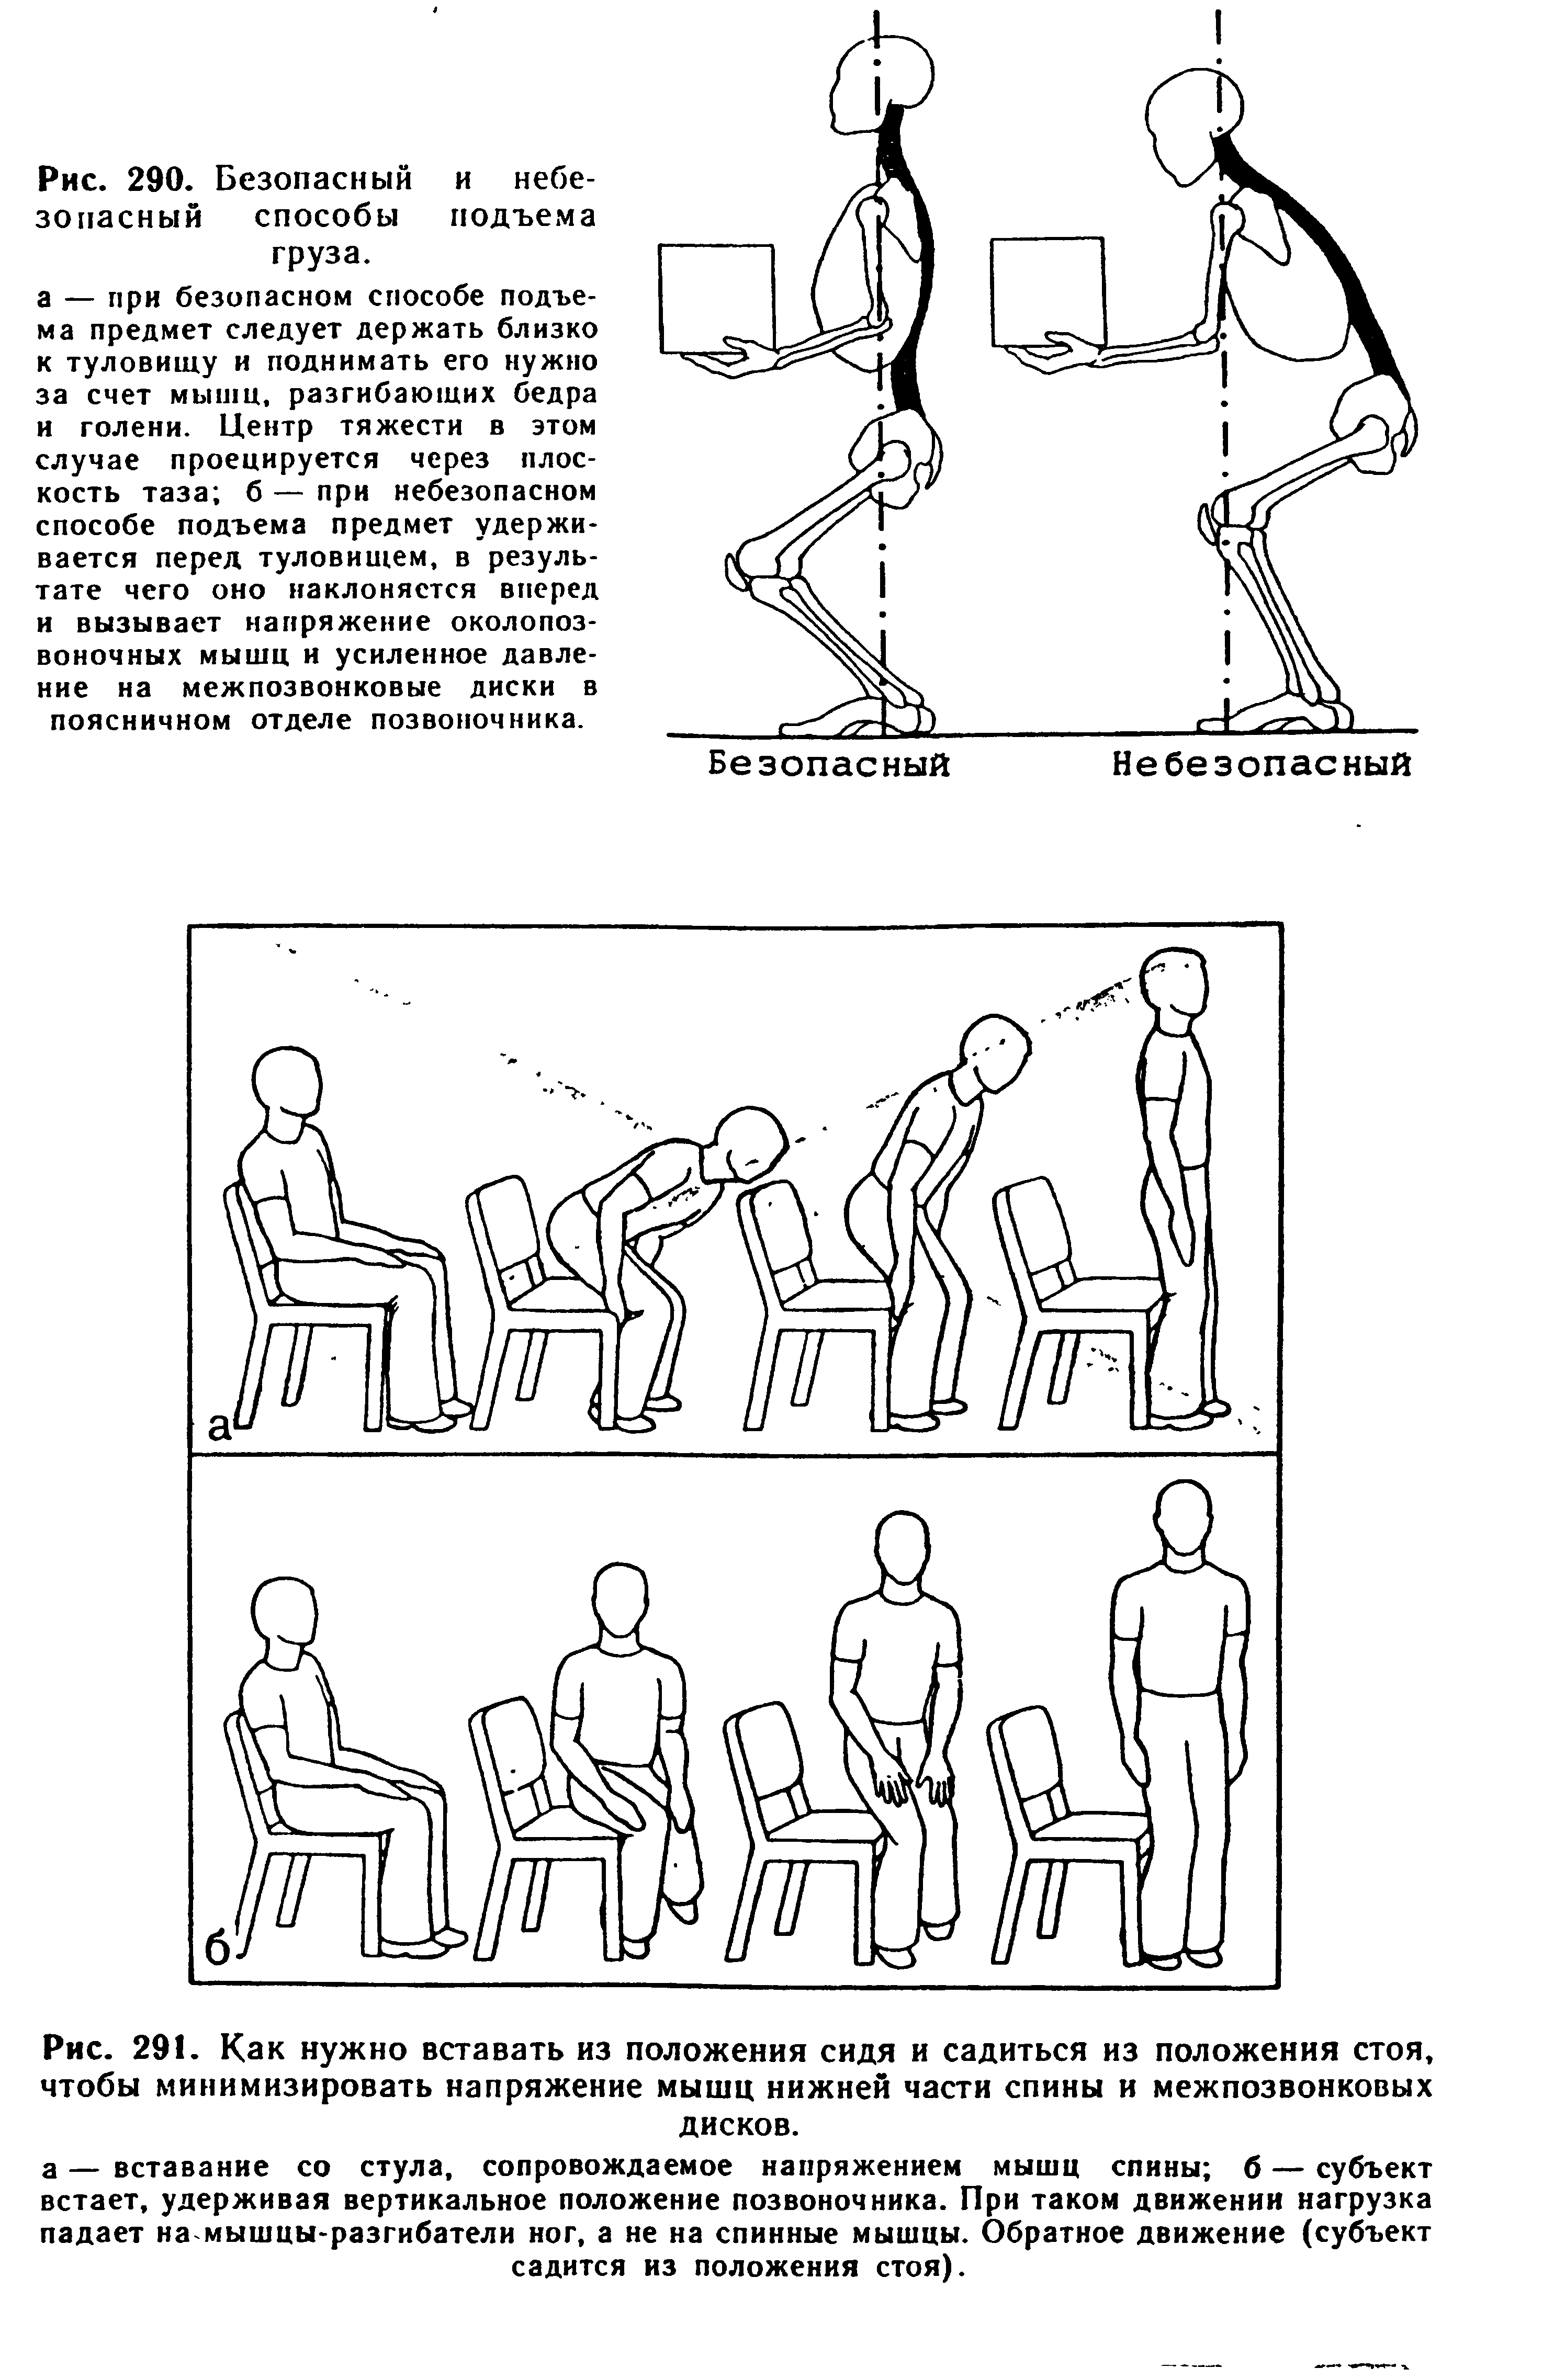 Рис. 291. Как нужно вставать из положения сидя и садиться из положения стоя, чтобы минимизировать напряжение мышц нижней части спины и межпозвонковых дисков.